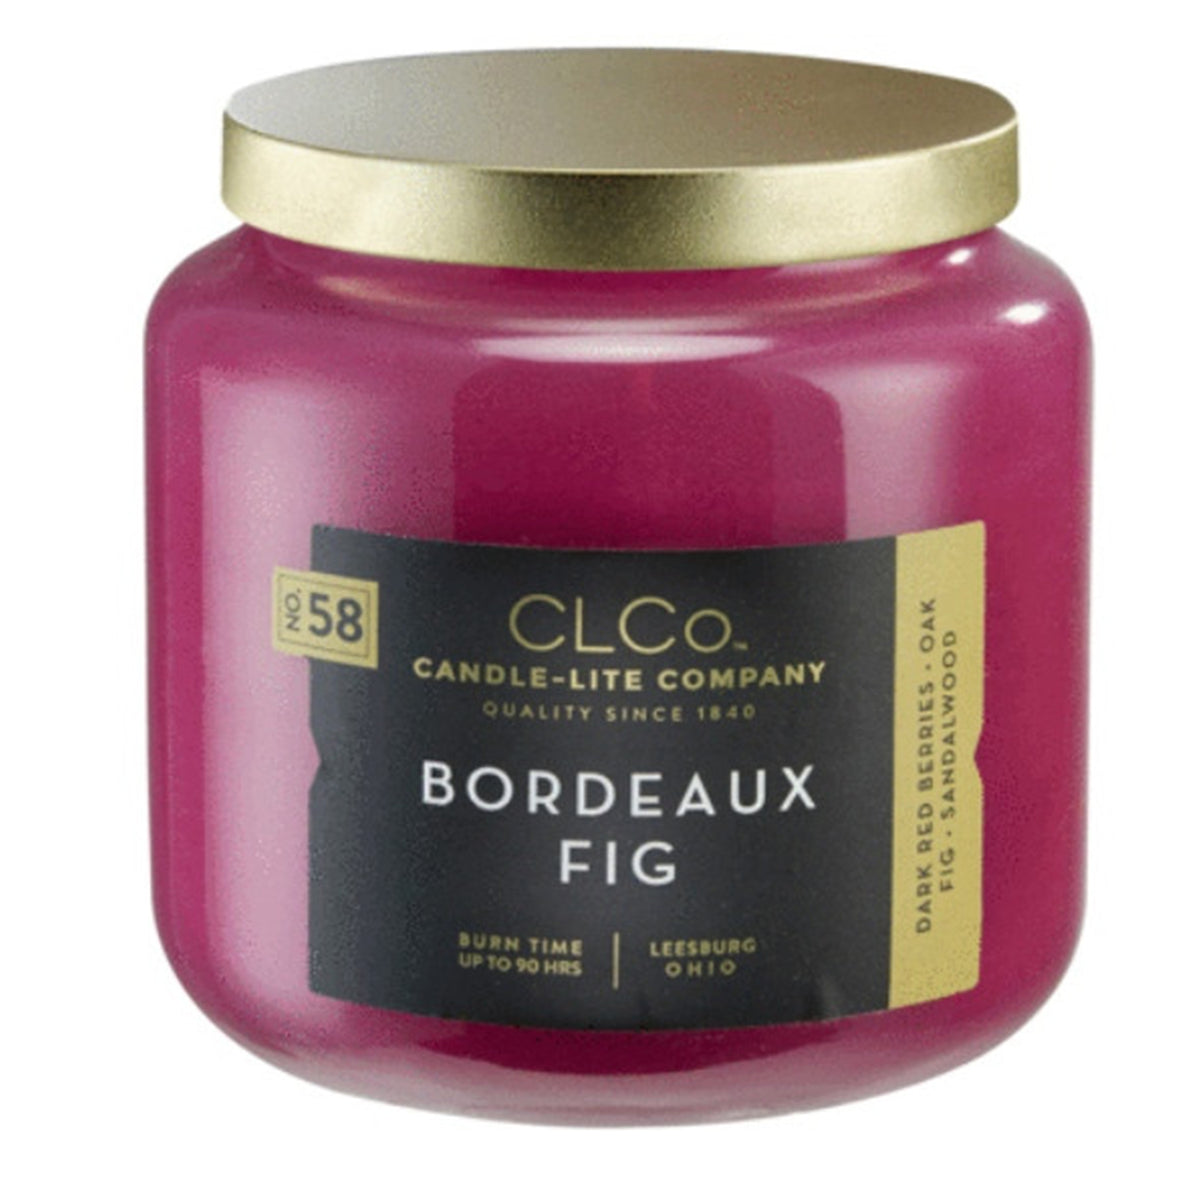 Bordeaux Fig Candle